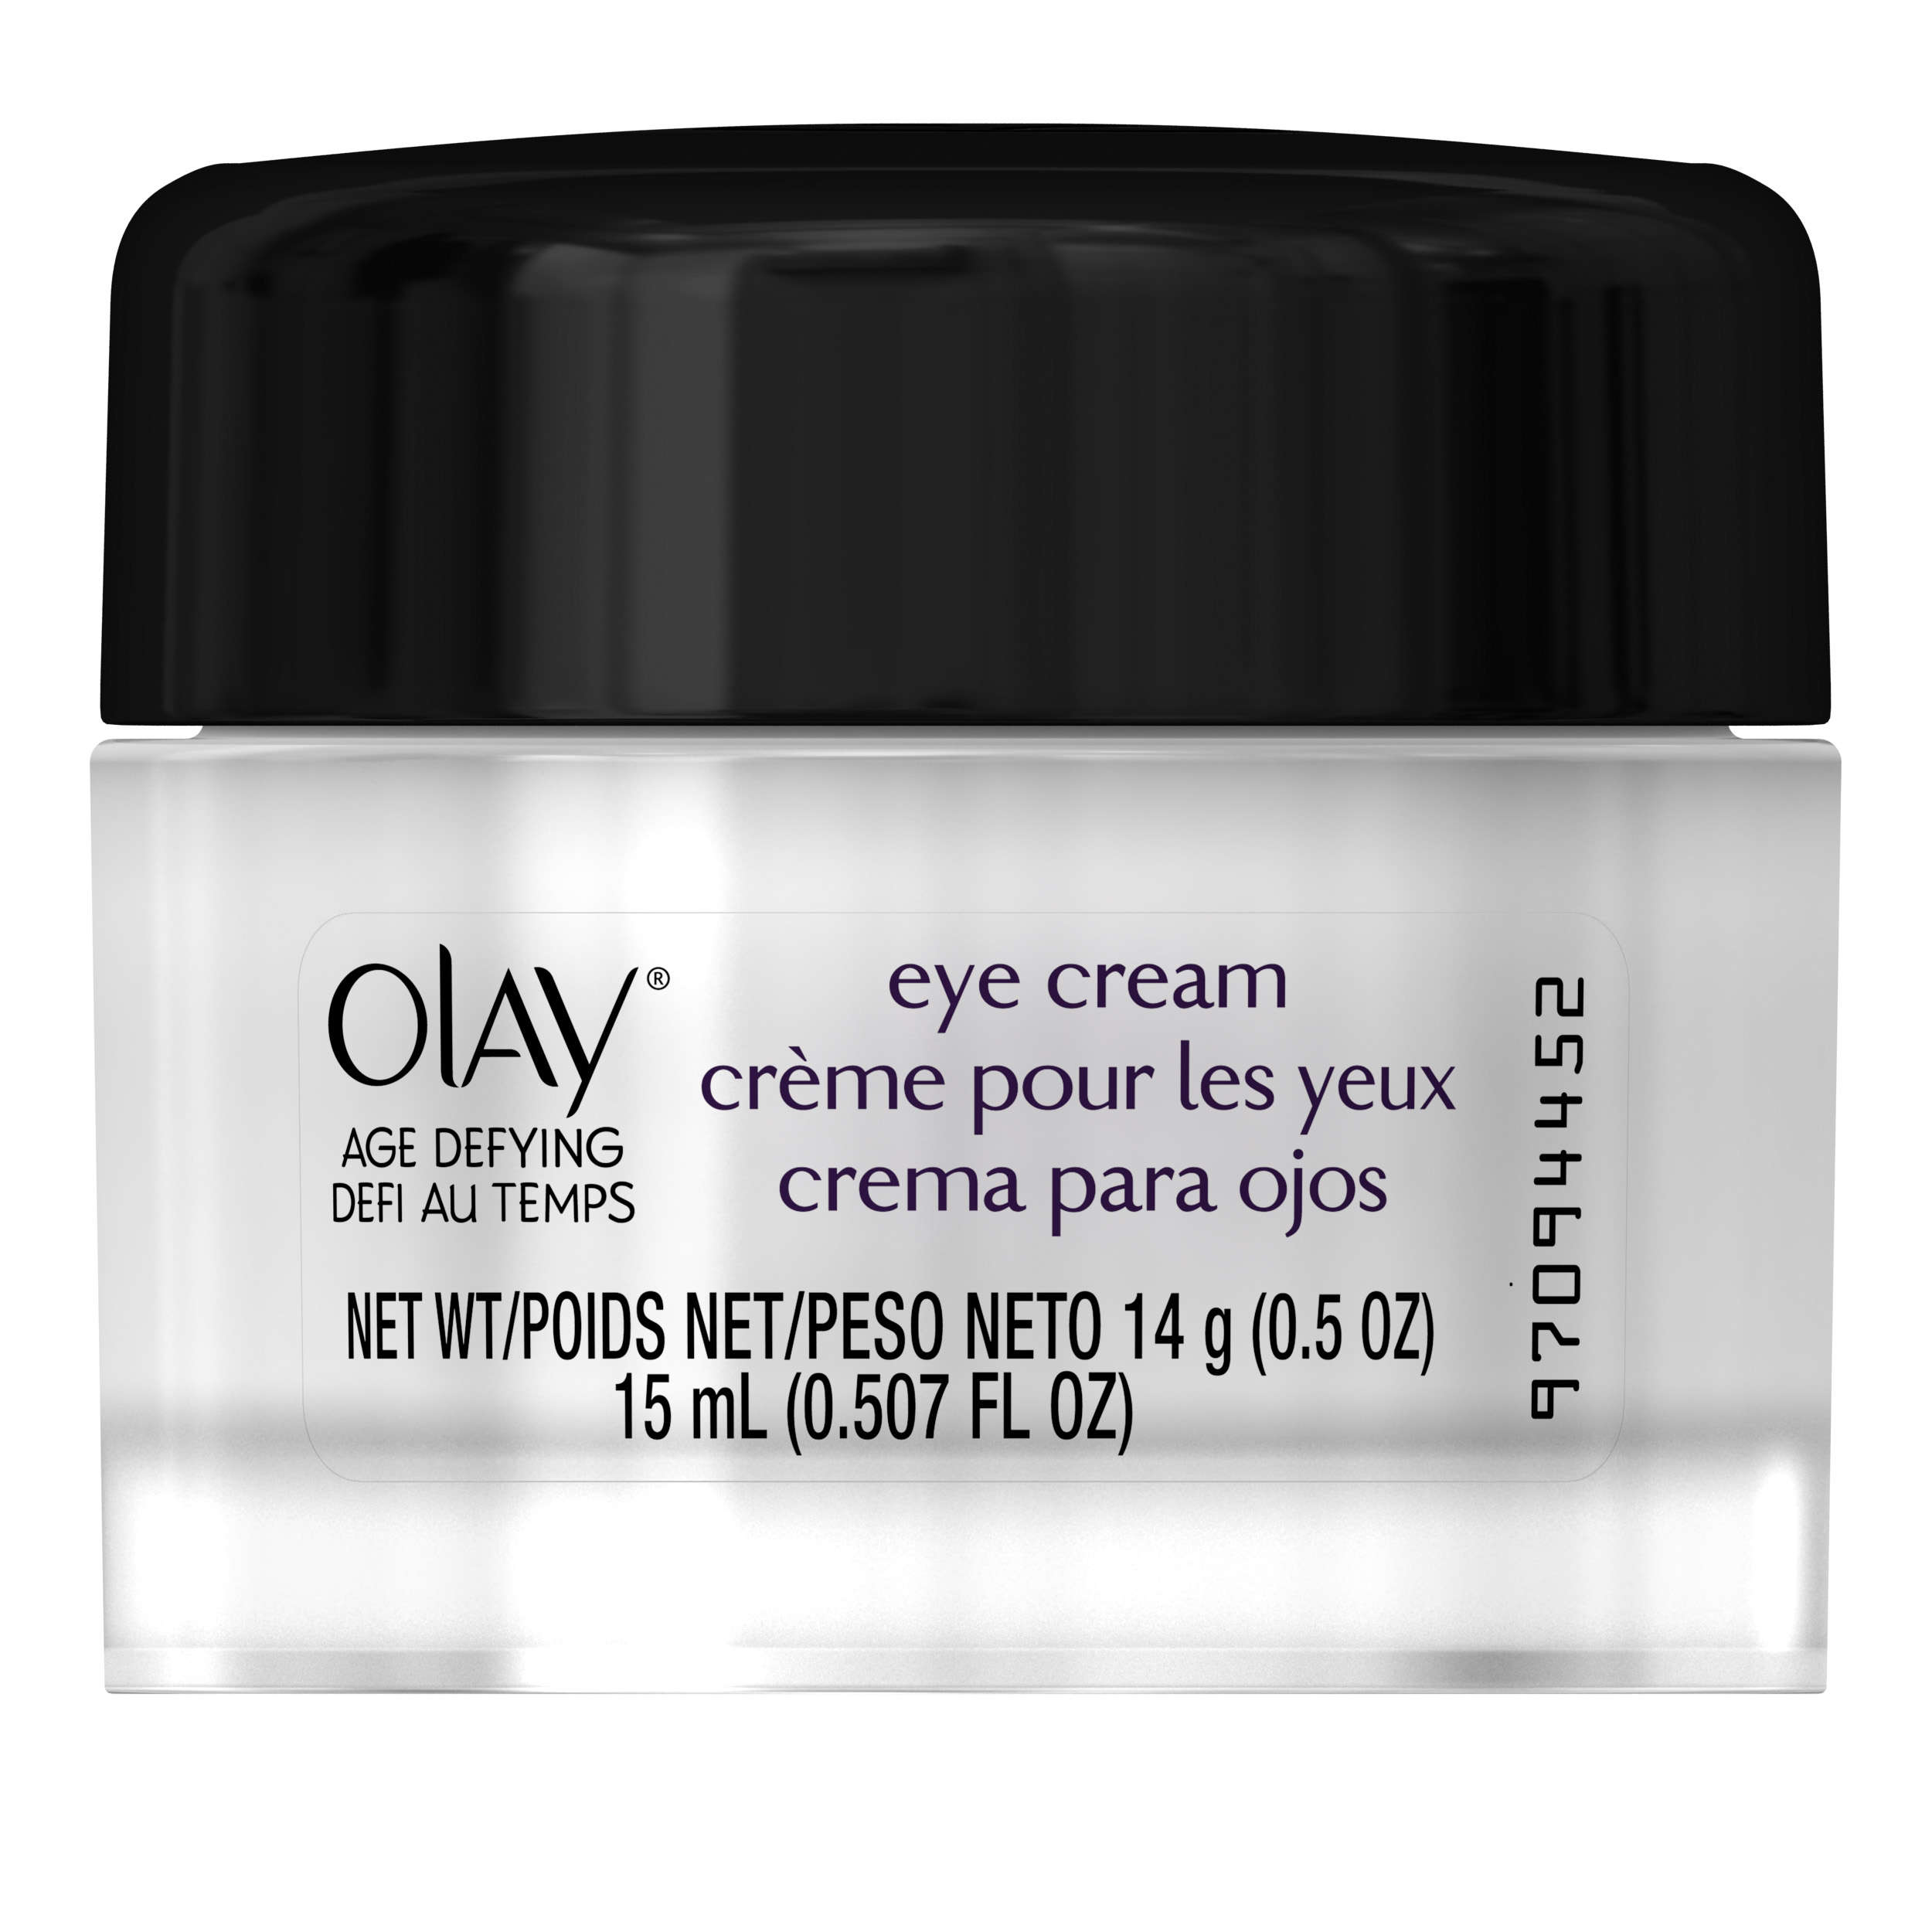 Olay Age Defying Anti-Wrinkle Eye Cream 14g (0.5 OZ) - image 2 of 6